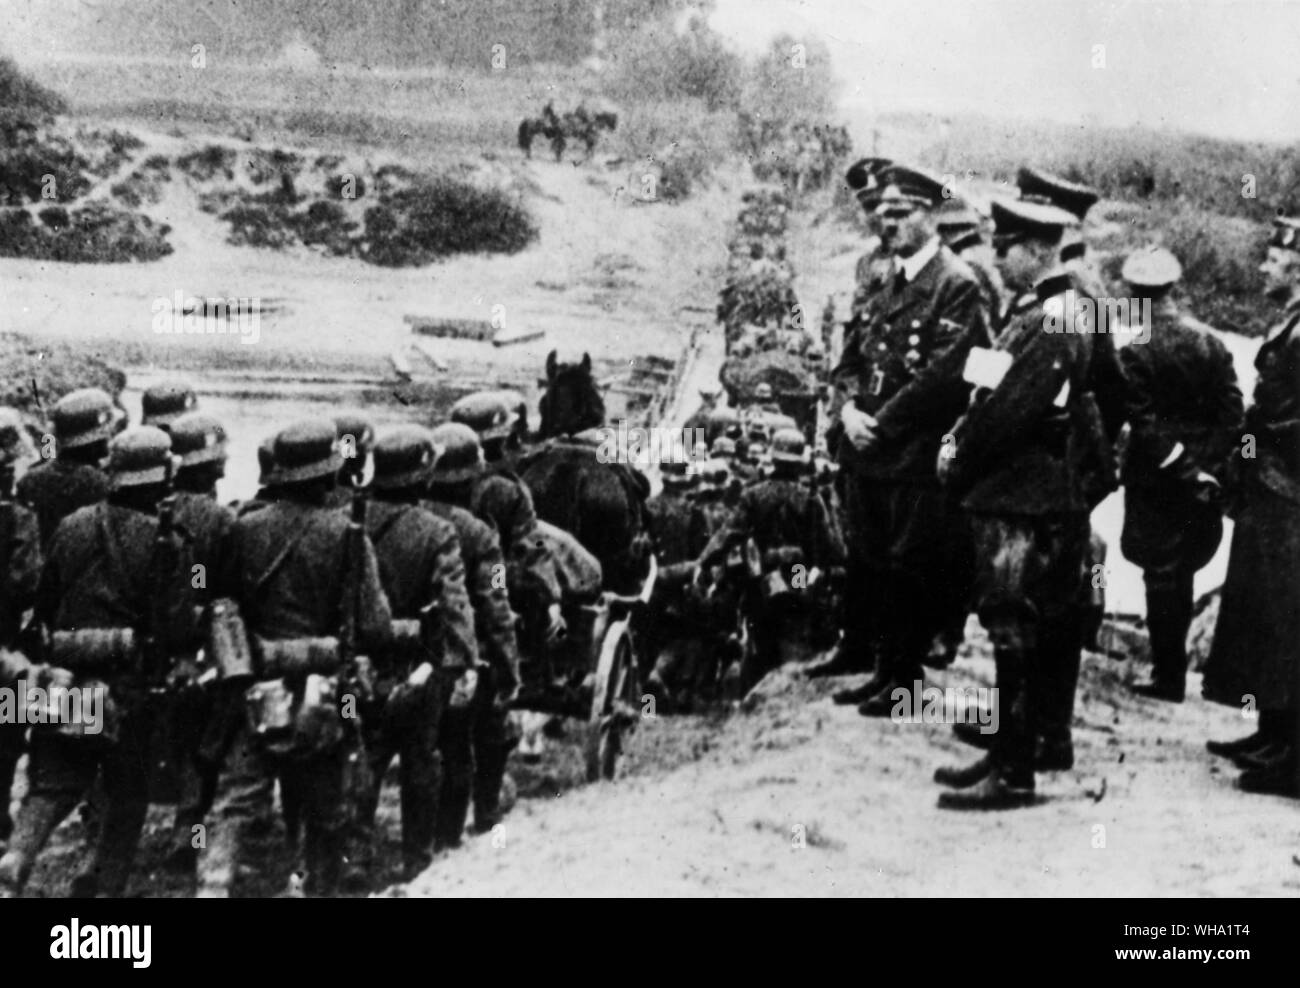 WW2: las tropas alemanas entrar en Polonia el 1 de septiembre de 1939 para iniciar la guerra. Foto de stock